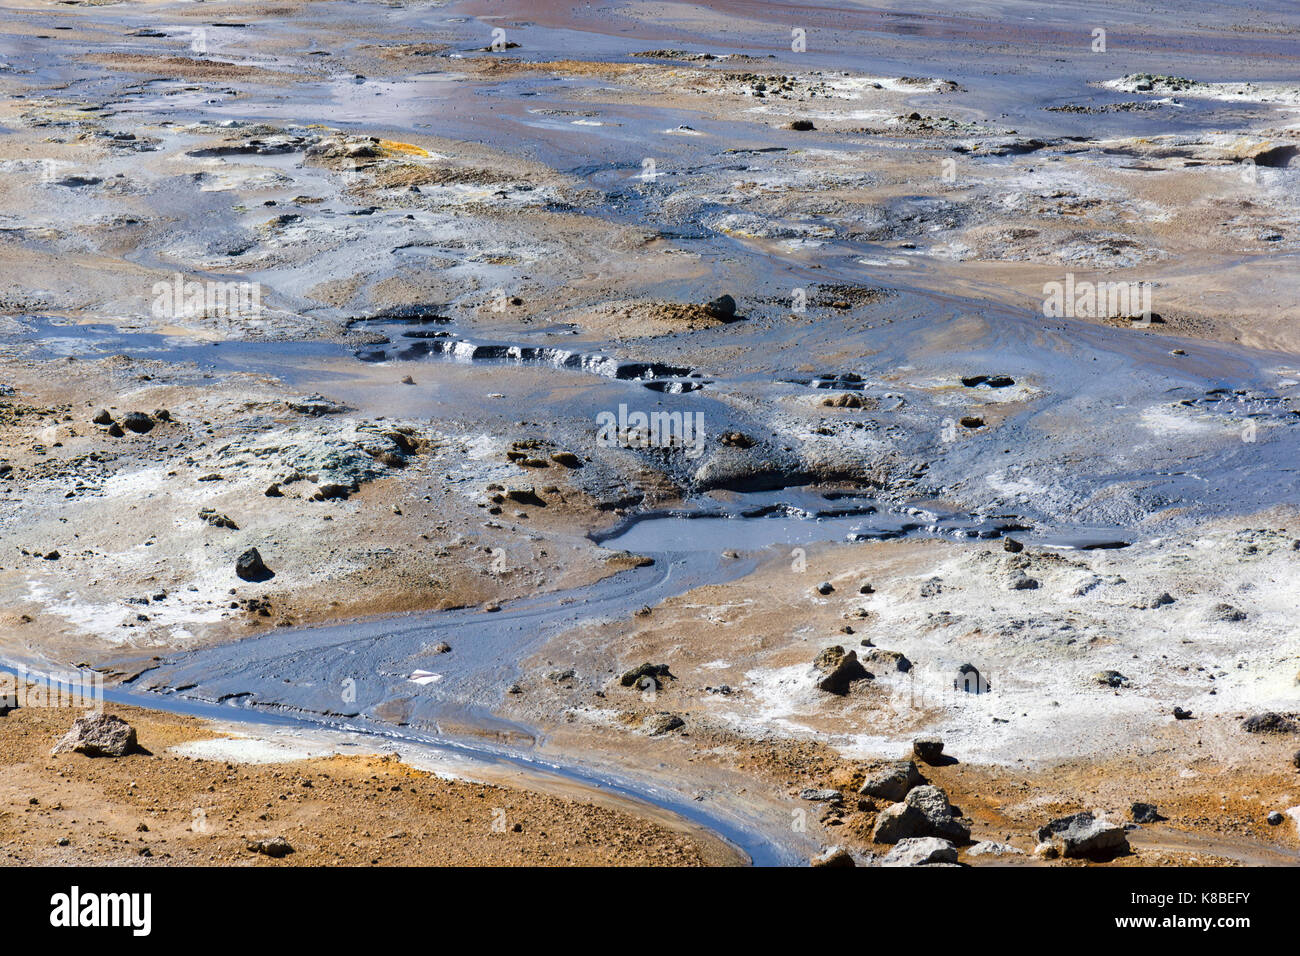 Boue chaude de couleur grise dans la zone géothermique de Námafjall Hverir, en Islande Banque D'Images